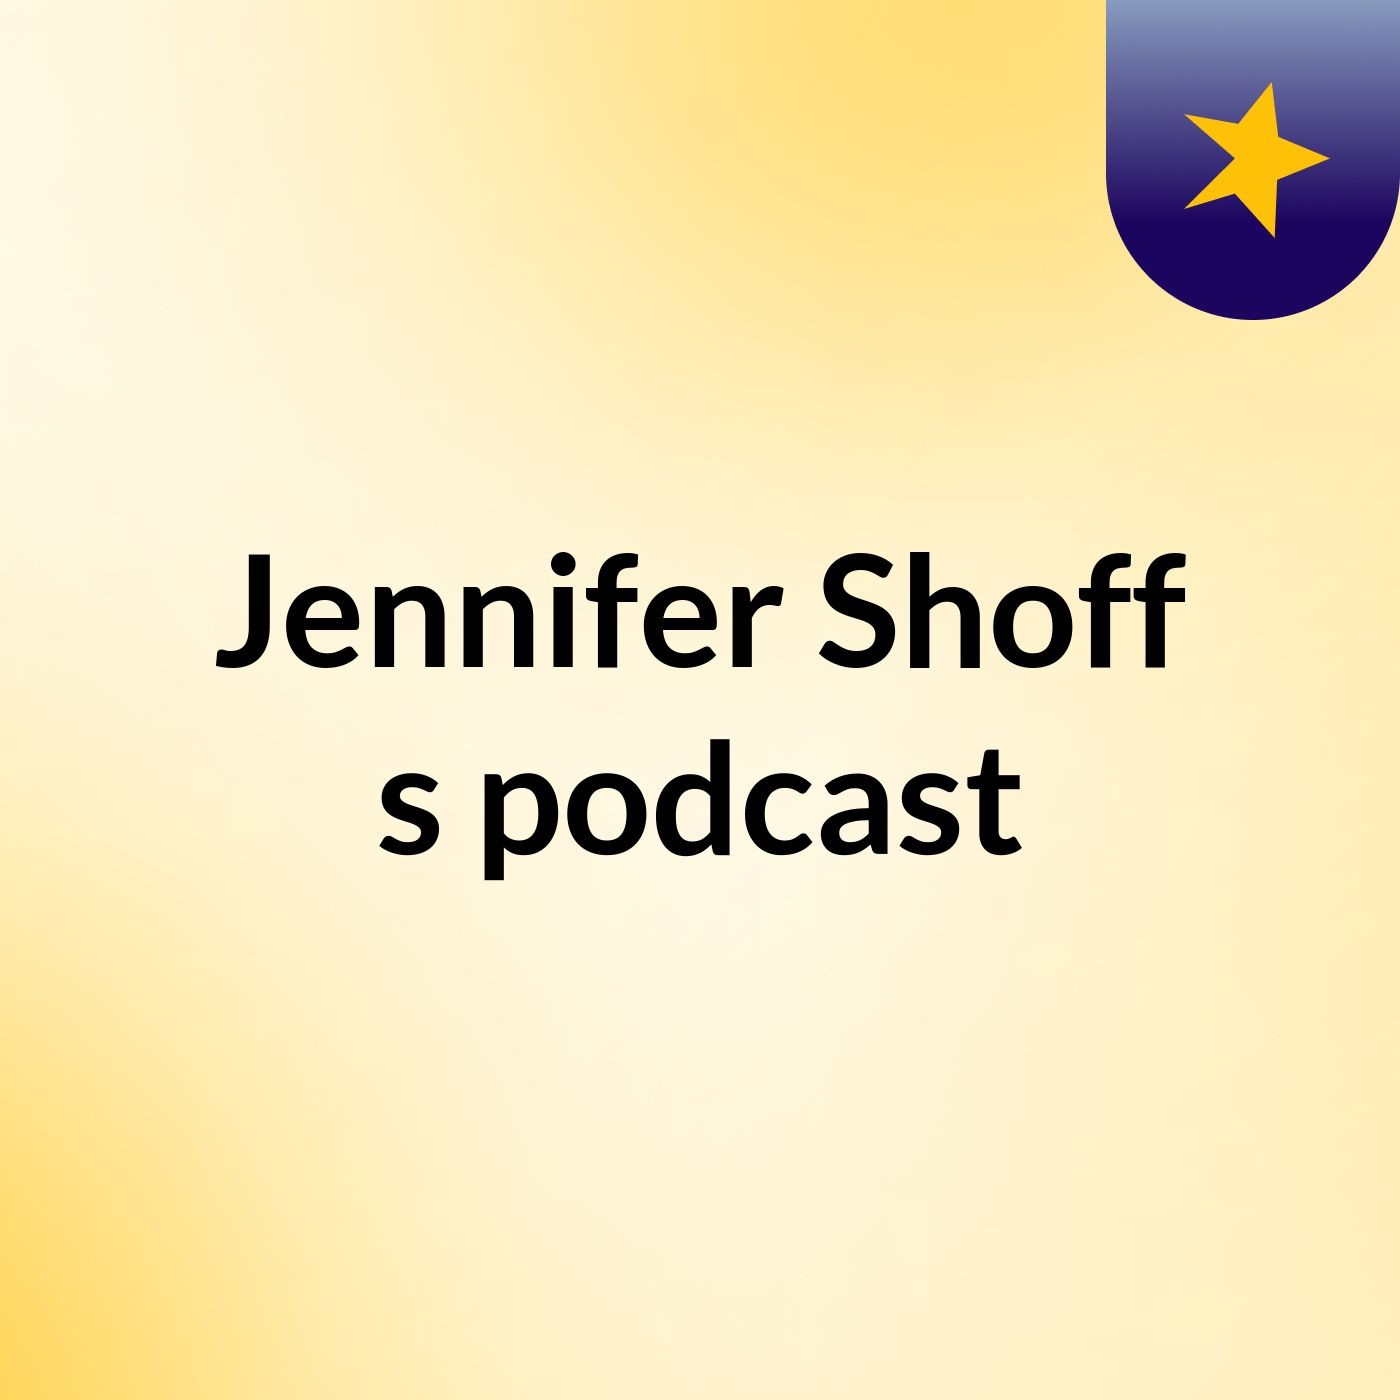 Jennifer Shoff's podcast